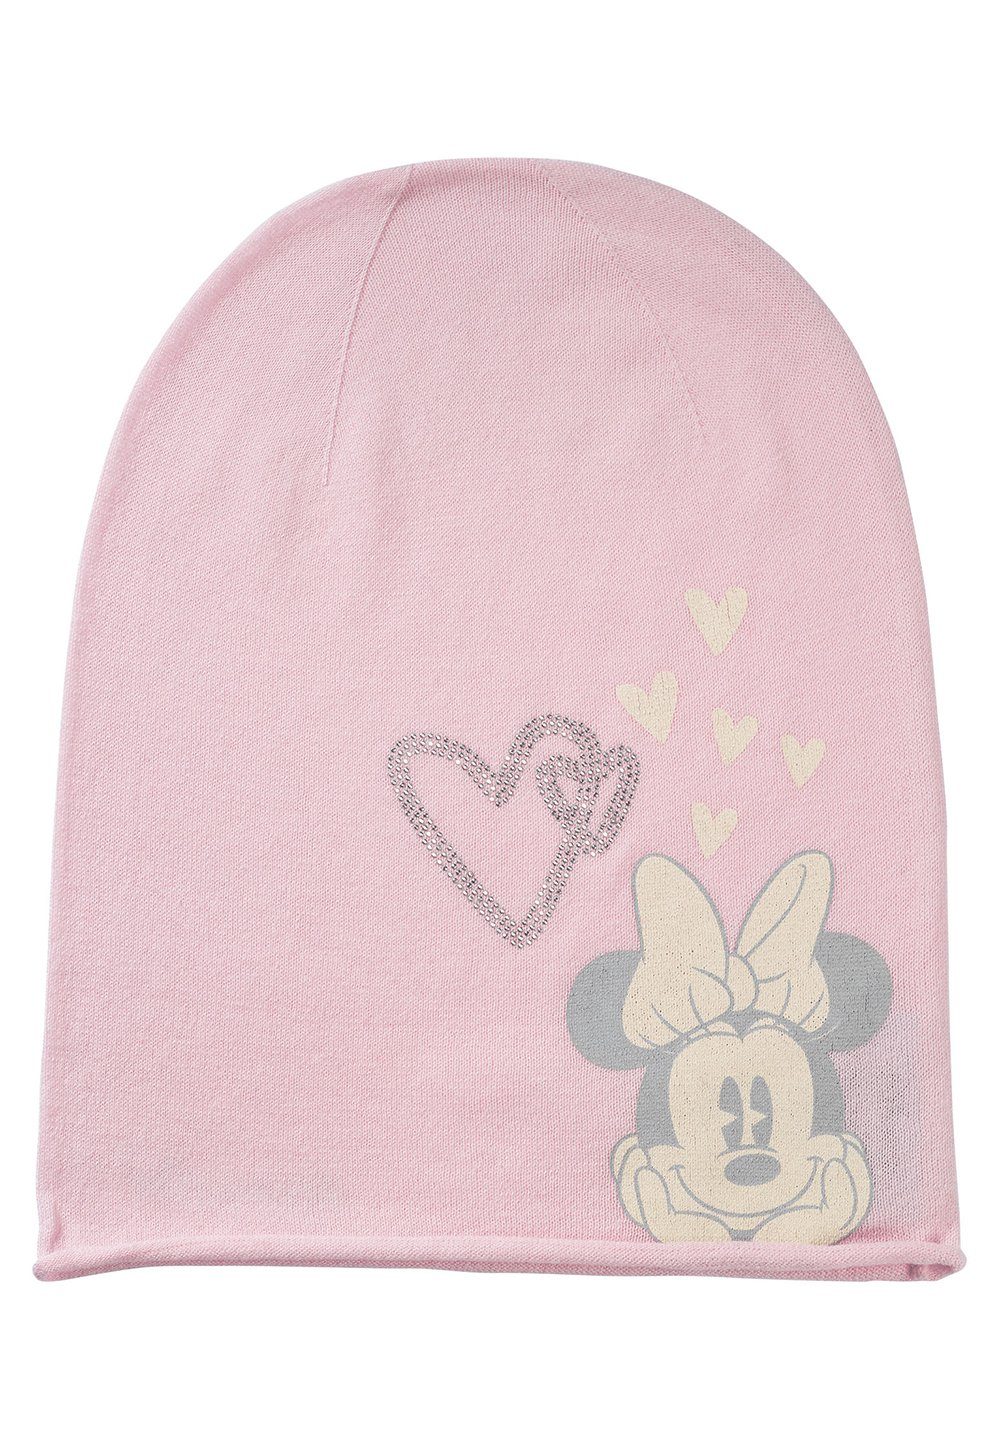 ONOMATO! Beanie Minnie Mouse Damen Winter-Mütze Mini Maus reine Baumwolle Rosa | Beanies